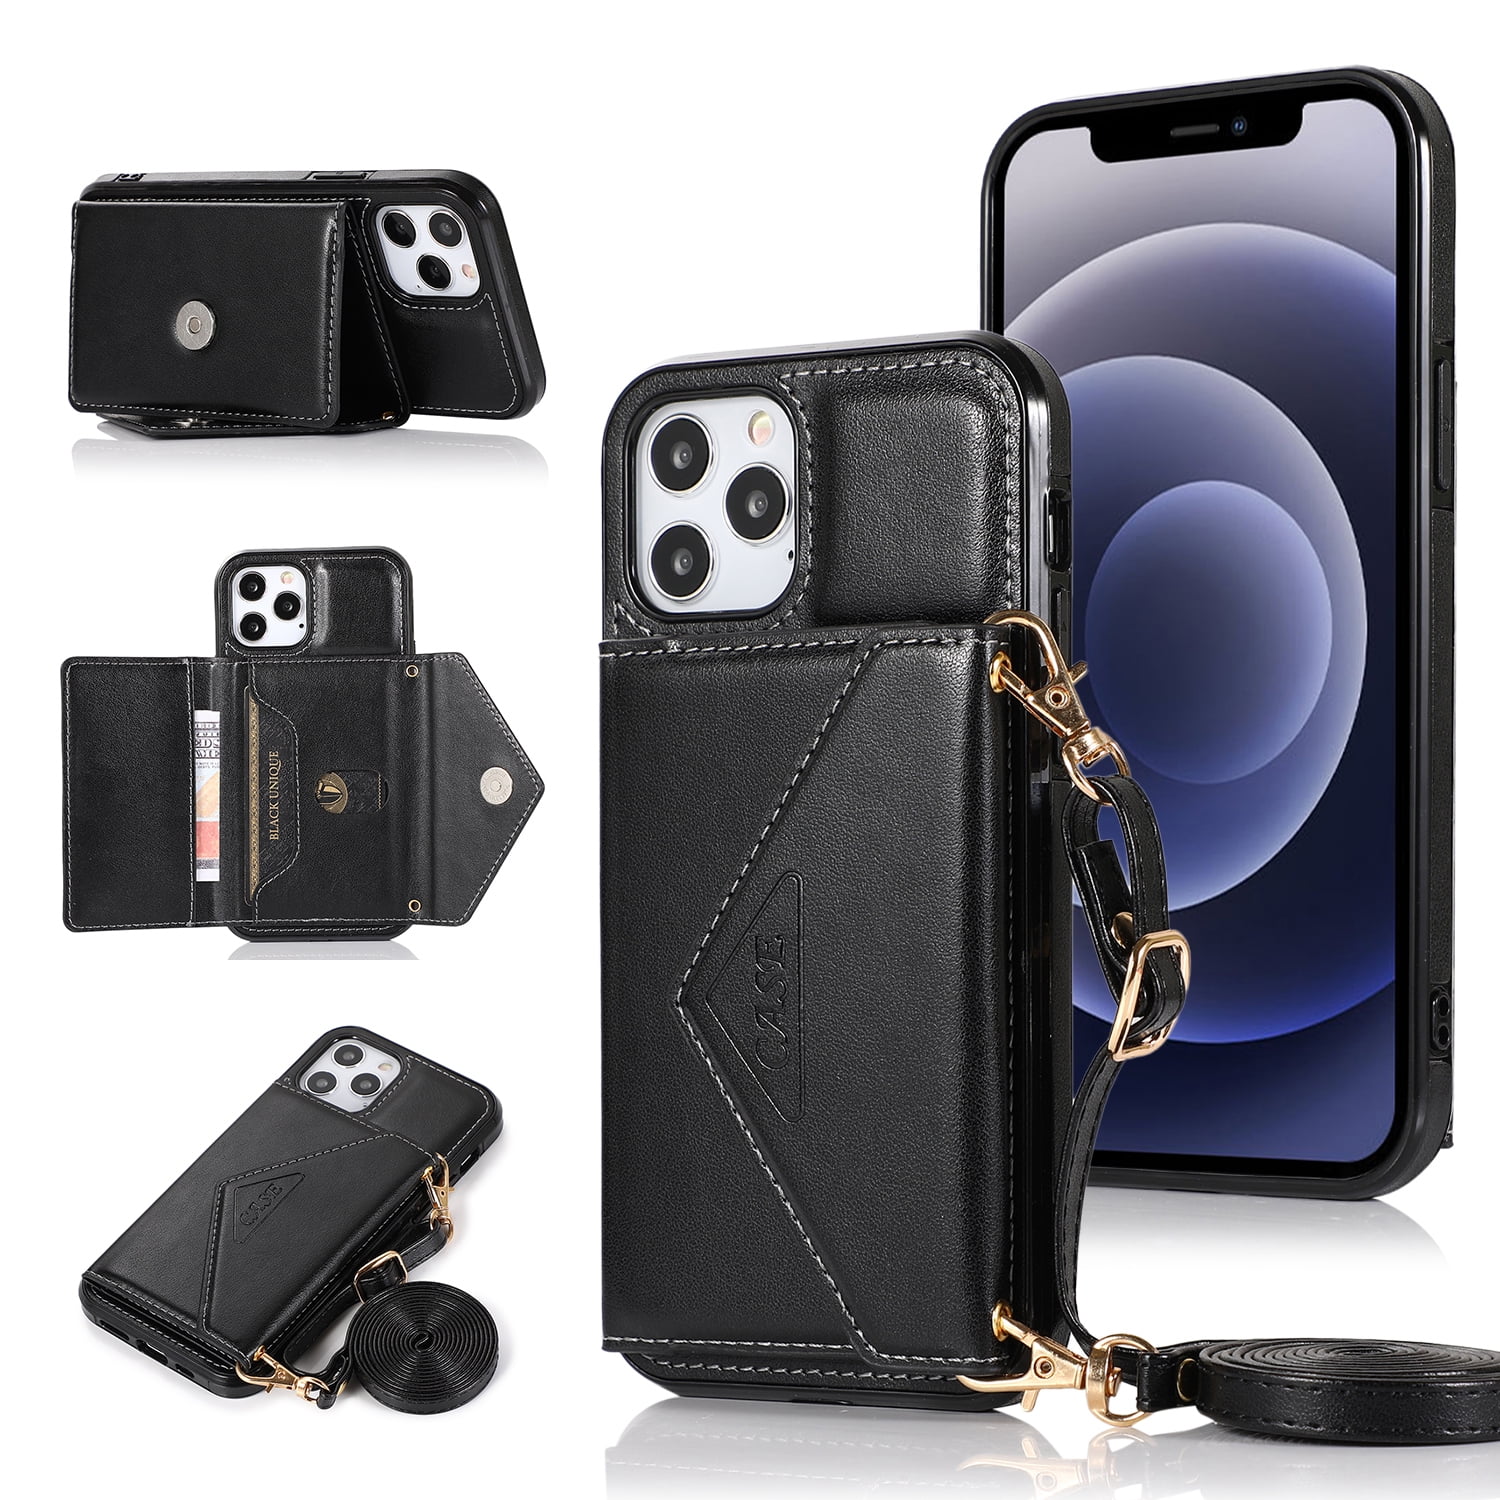 for Apple iPhone 8 Plus/7 Plus/6 Plus/6s Plus Wallet Case Card Holder Lanyard Detachable Neck Strap Protective Flip Leather Cover ,Xpm Phone Case [Black] - Walmart.com